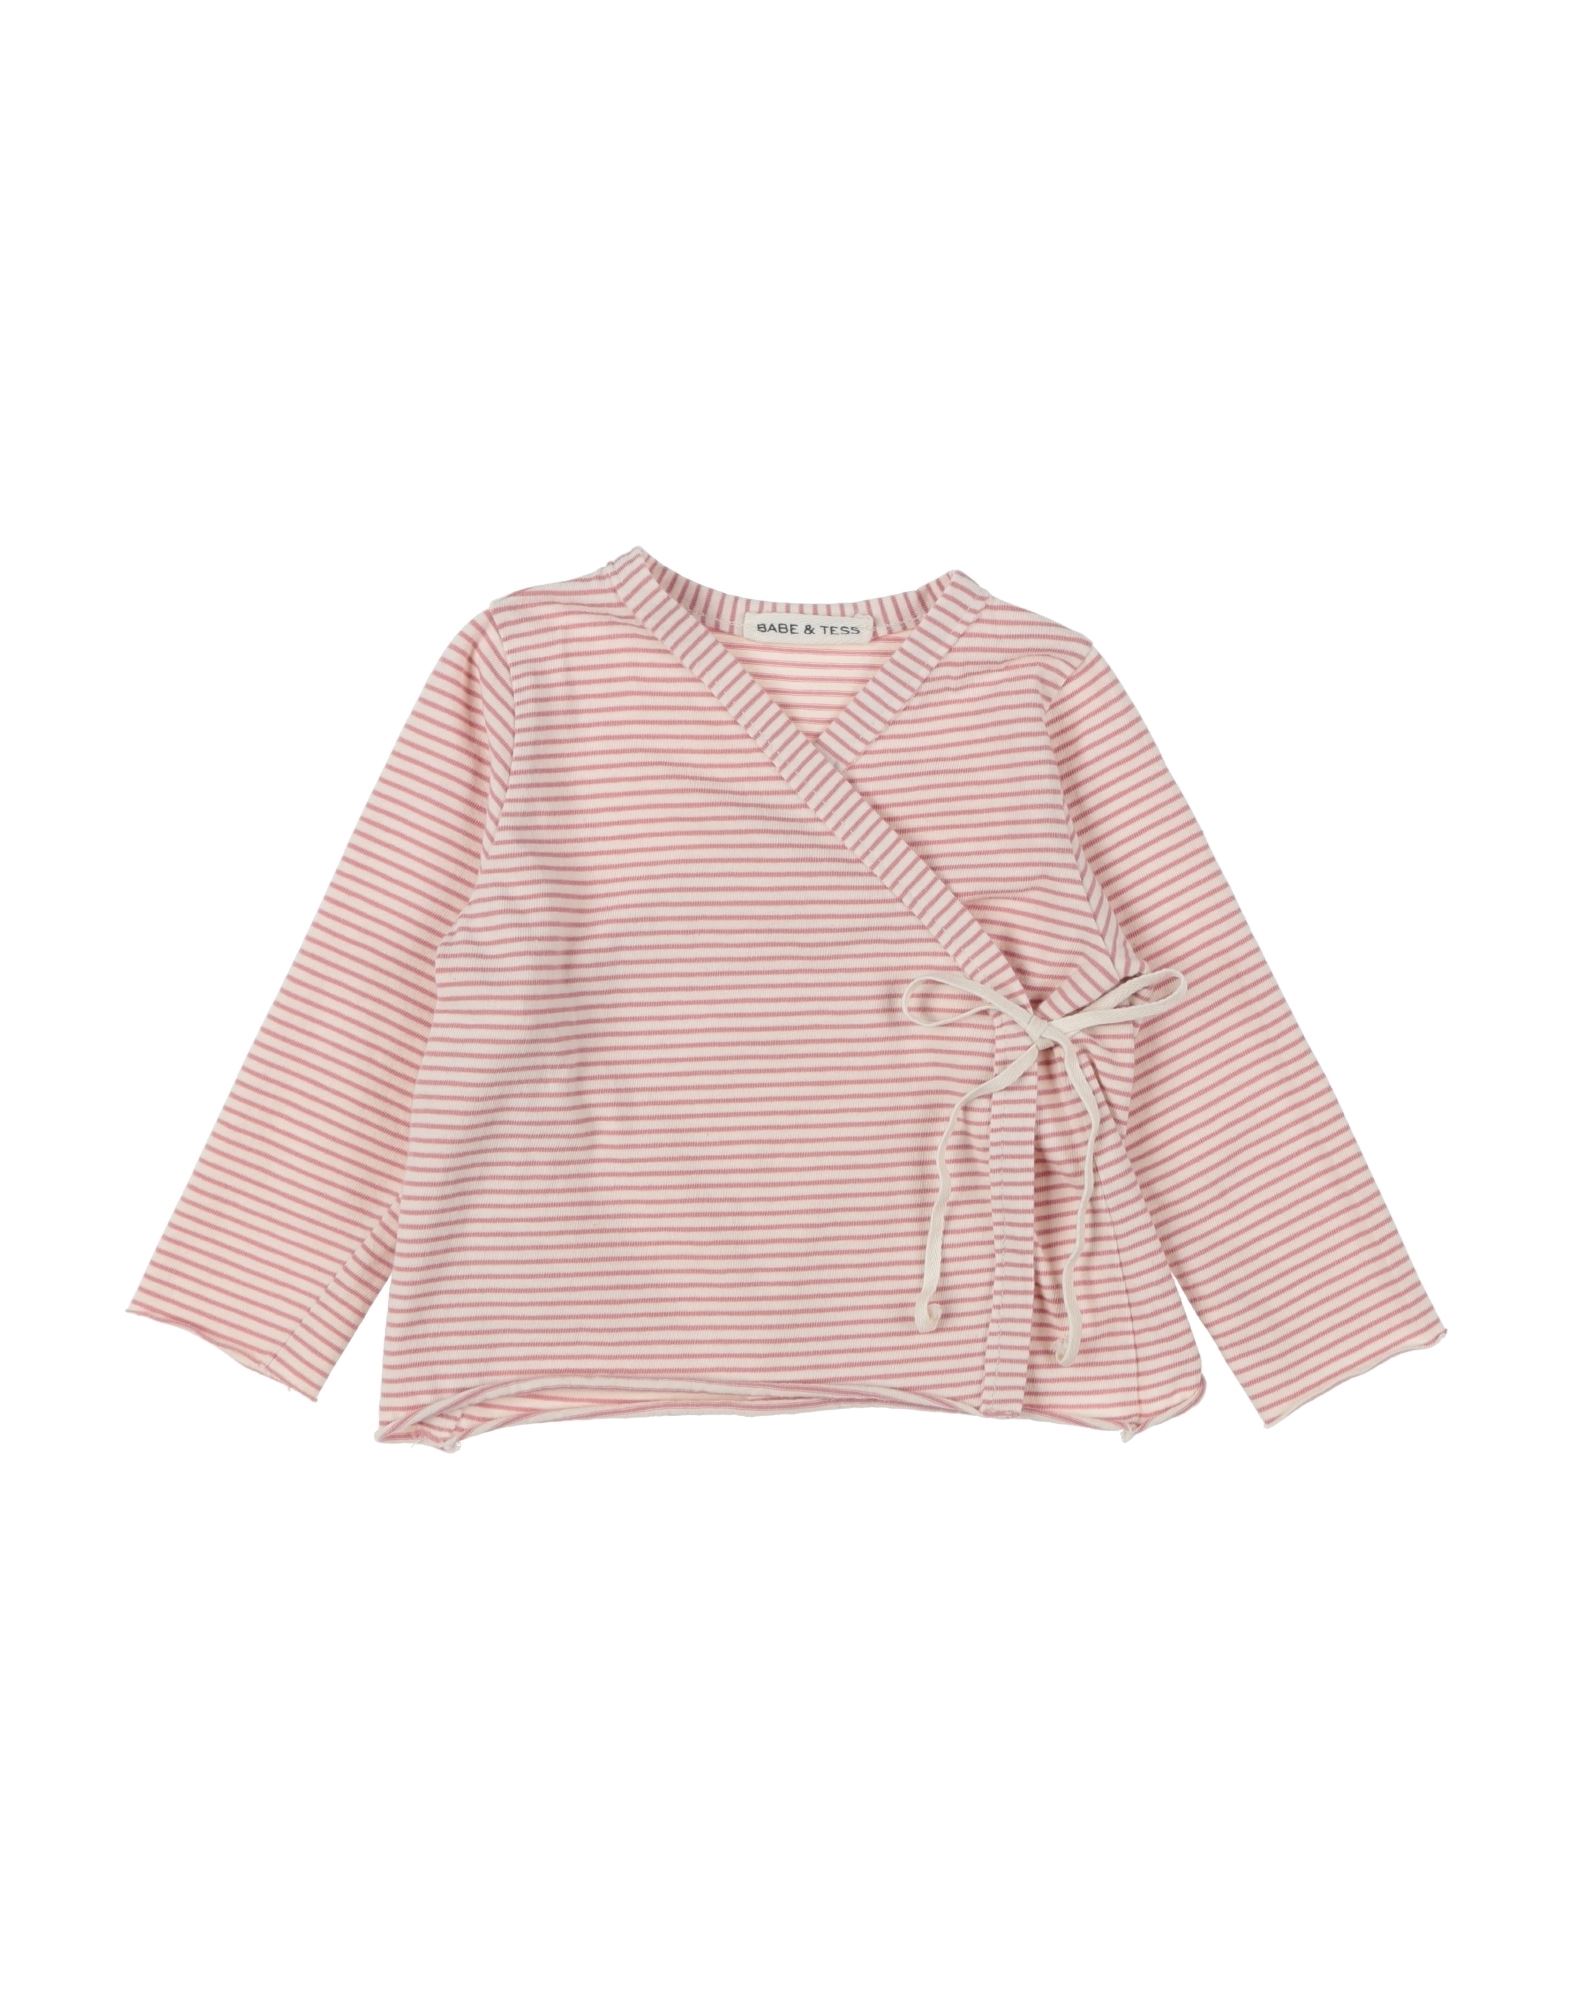 Babe And Tess Kids' Babe & Tess Newborn Girl Shirt Pastel Pink Size 3 Cotton, Elastane